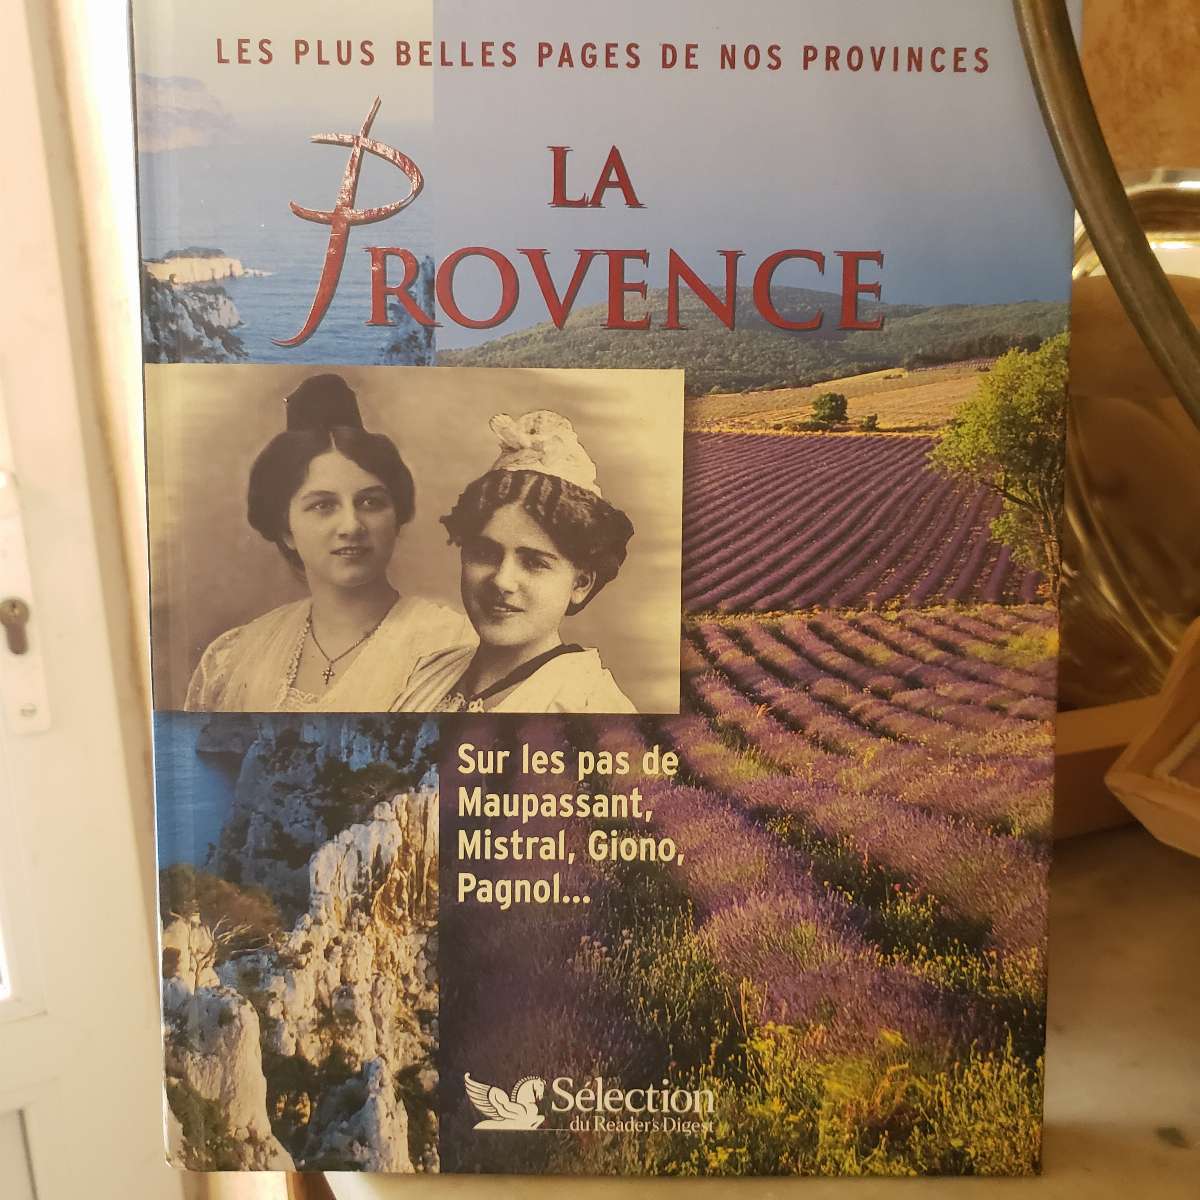 La Provence, sur les pas de Maupassant, Mistral, Gironde, Pagnol...